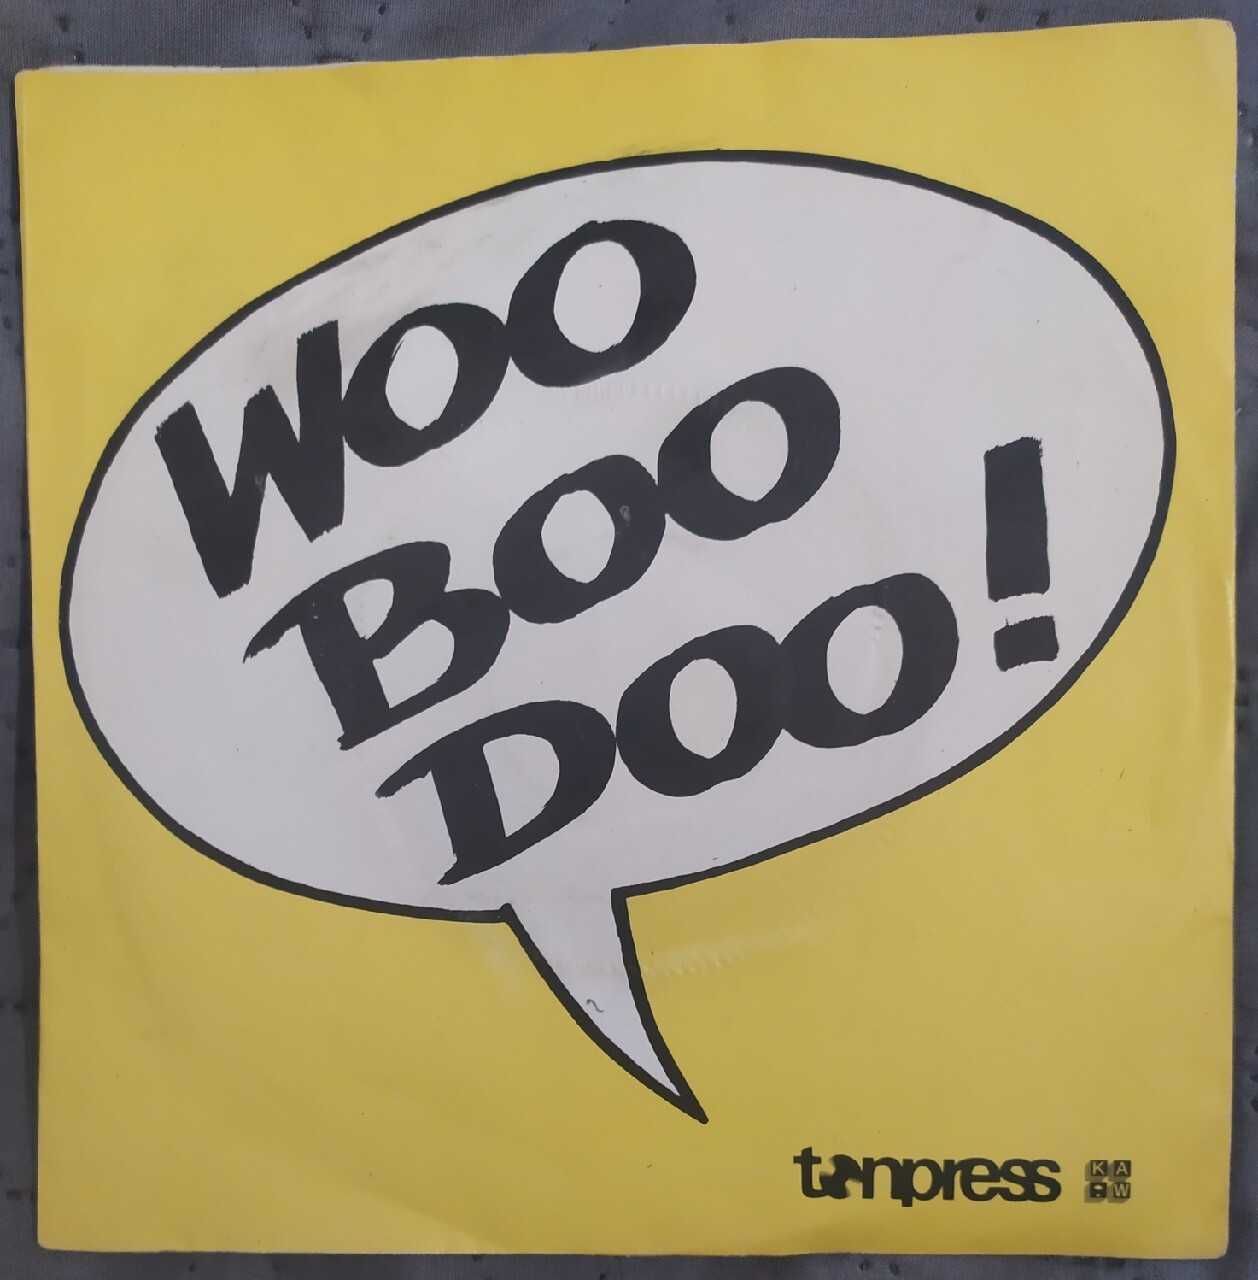 Woo Boo Doo! 7" EX. Jazz Rock.